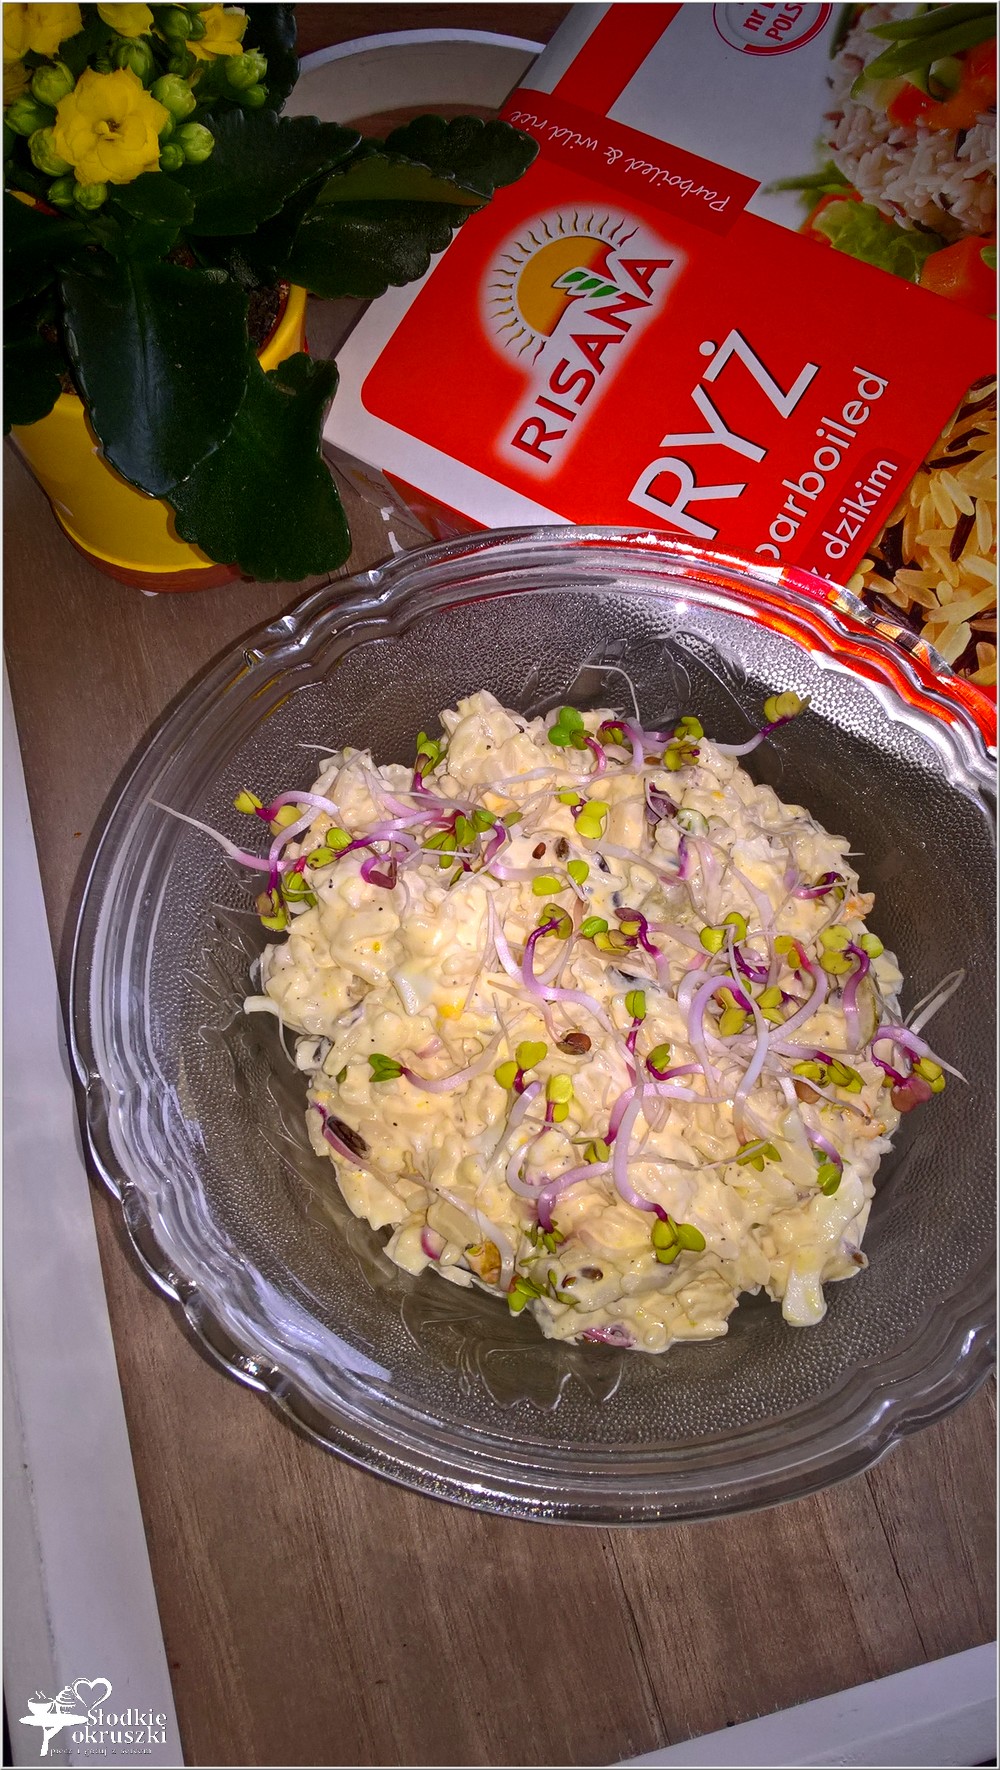 Ryżowa sałatka z oliwkami i kiełkami rzodkiewki (1)